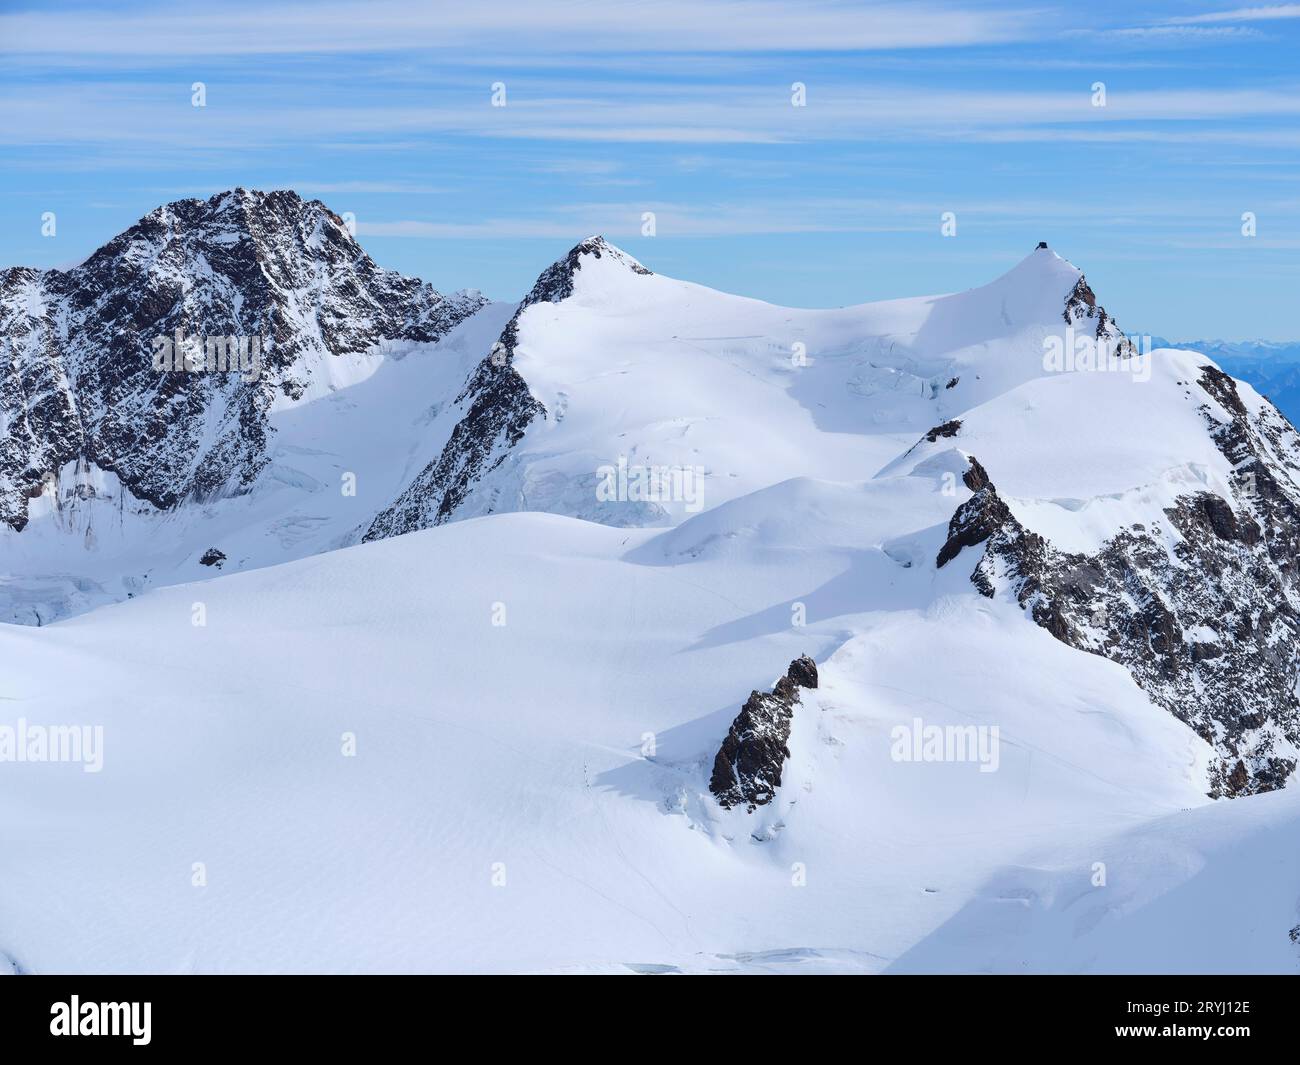 VUE AÉRIENNE. Côté suisse du Monte Rosa de gauche à droite ; Dufourspitze (4634m, plus haut), Zumsteinspitze et Signalkuppe. Zermatt, Valais, Suisse. Banque D'Images